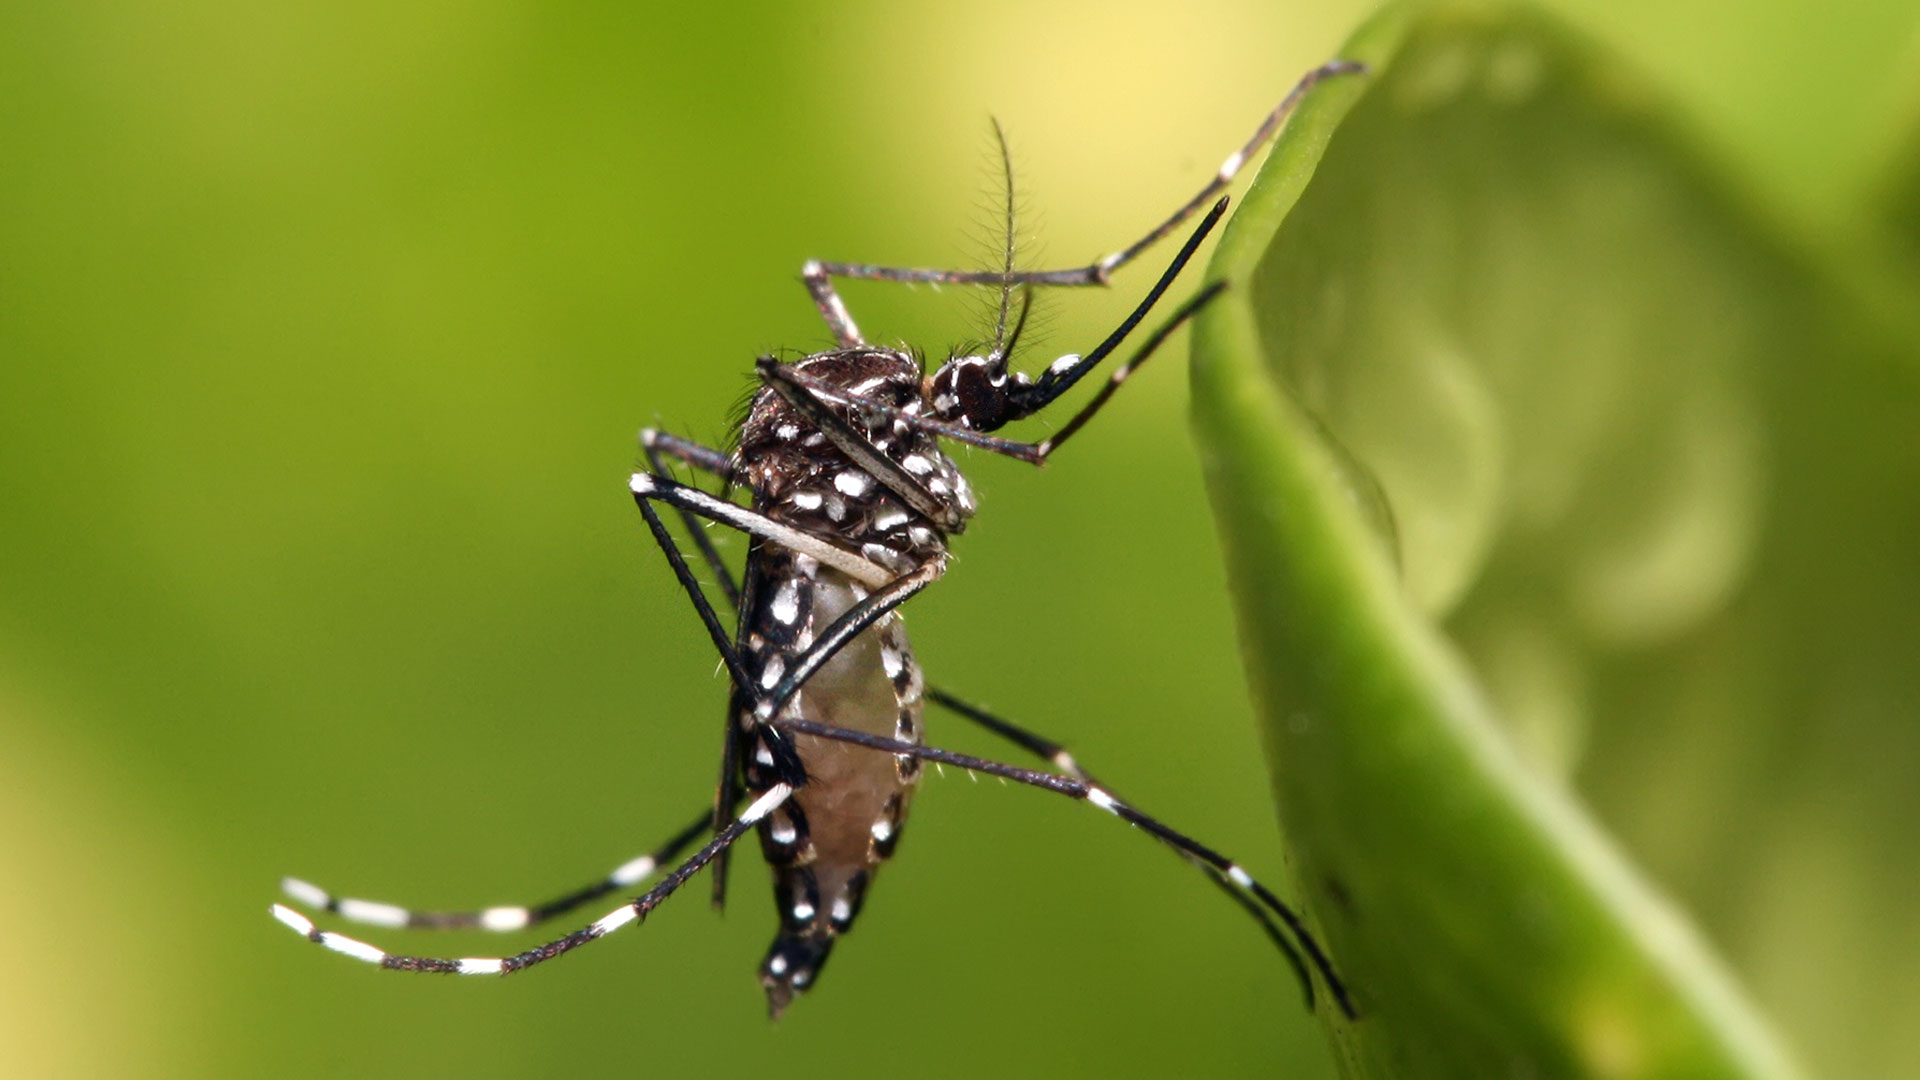 Pocando: Nova arma pra exterminar a dengue